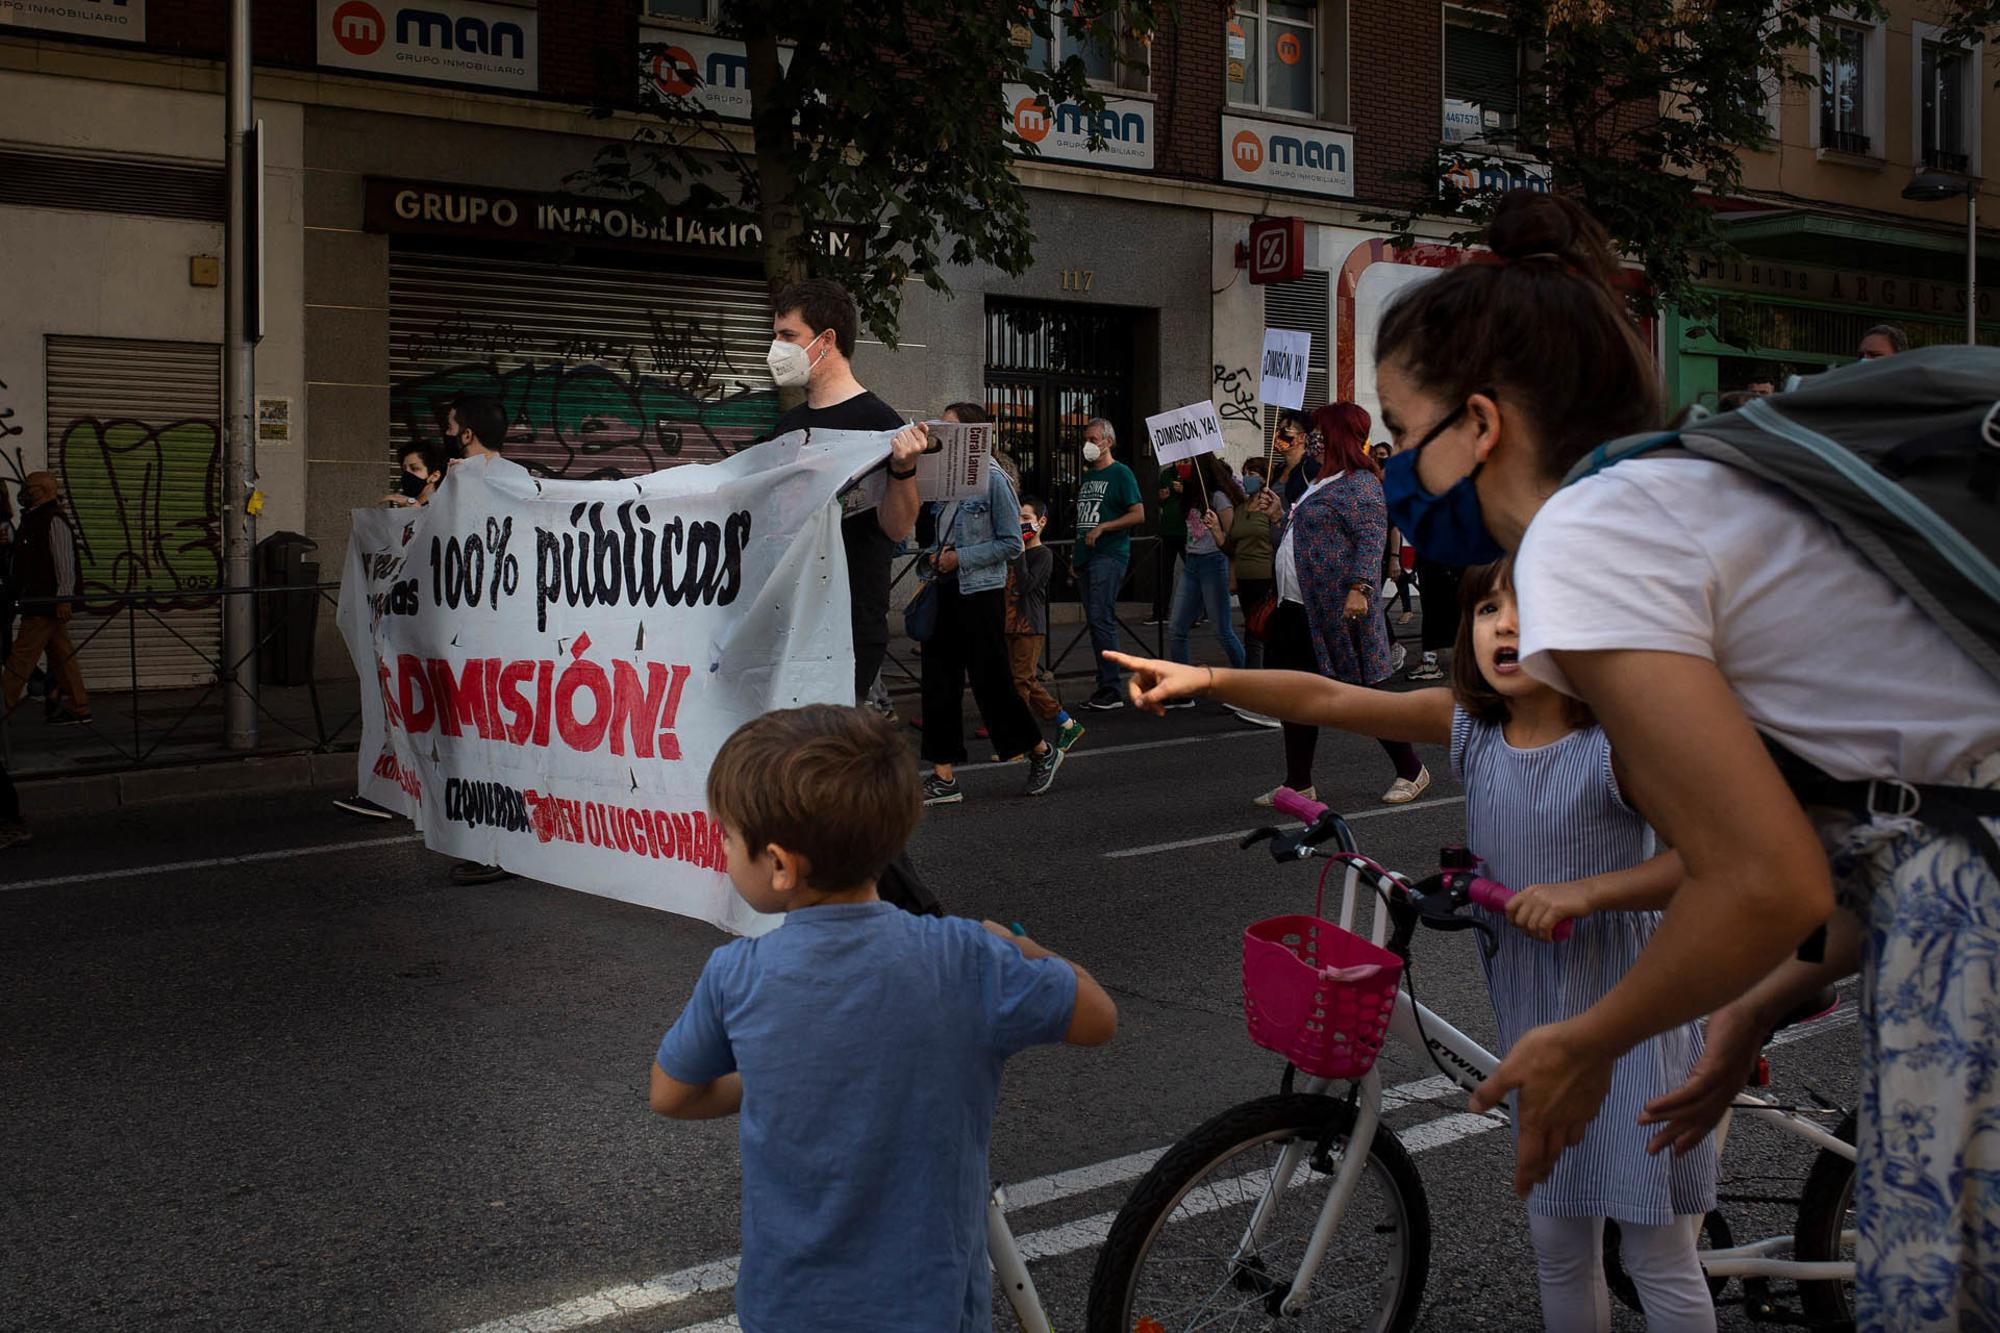 Manifestación contra la "segregación de clase" en Carabanchel, el domingo 27 de septiembre de 2020. - 11